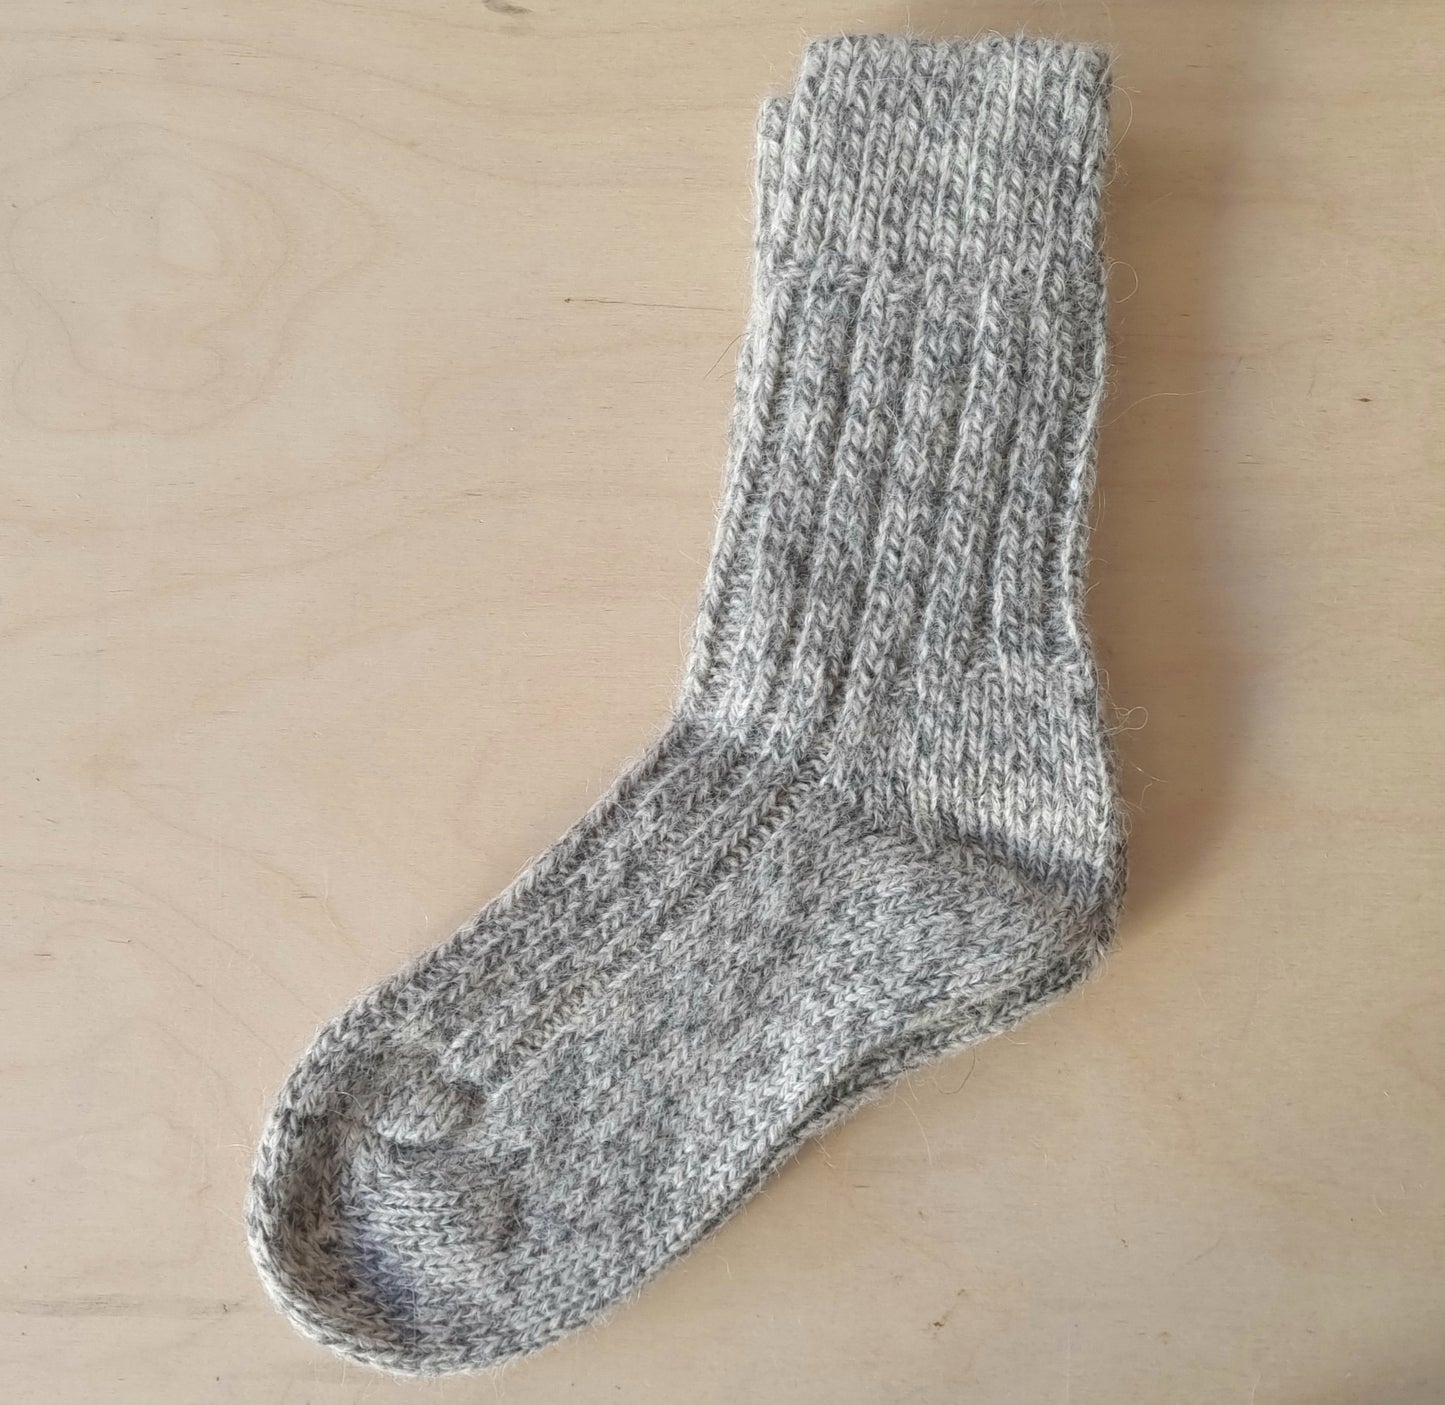 Hand made wool and alpaca socks